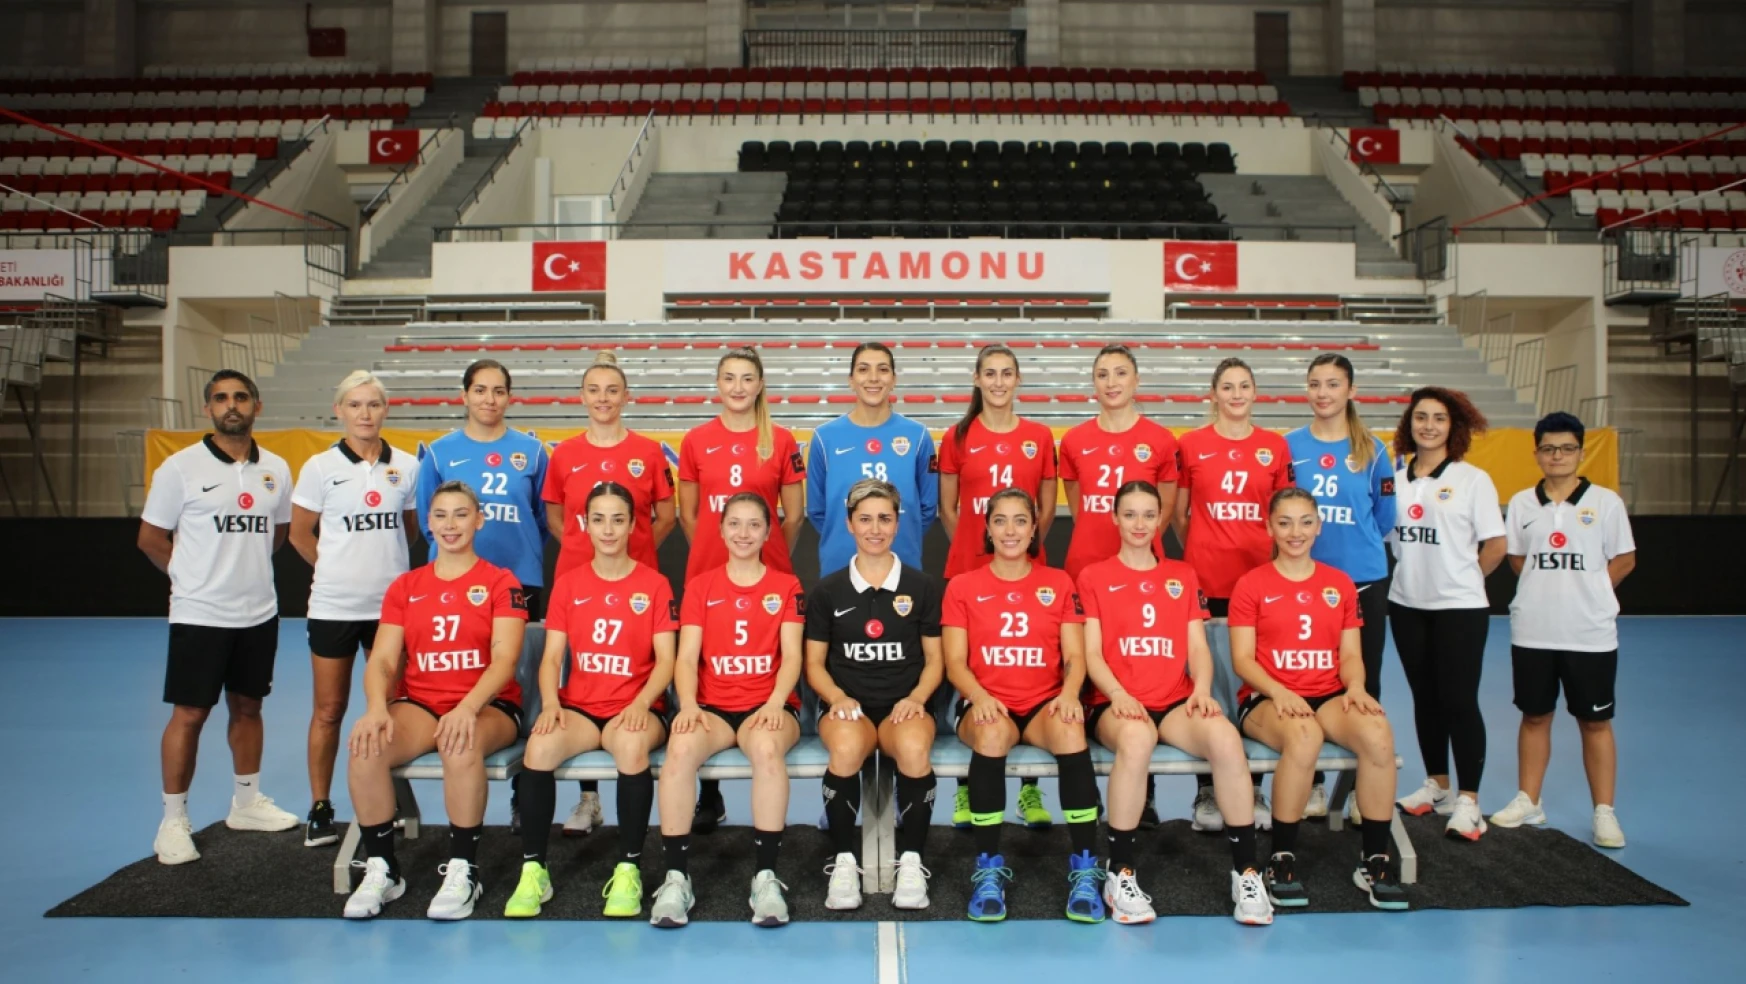 Kastamonu Belediyespor'un hedefi Süper Kupa